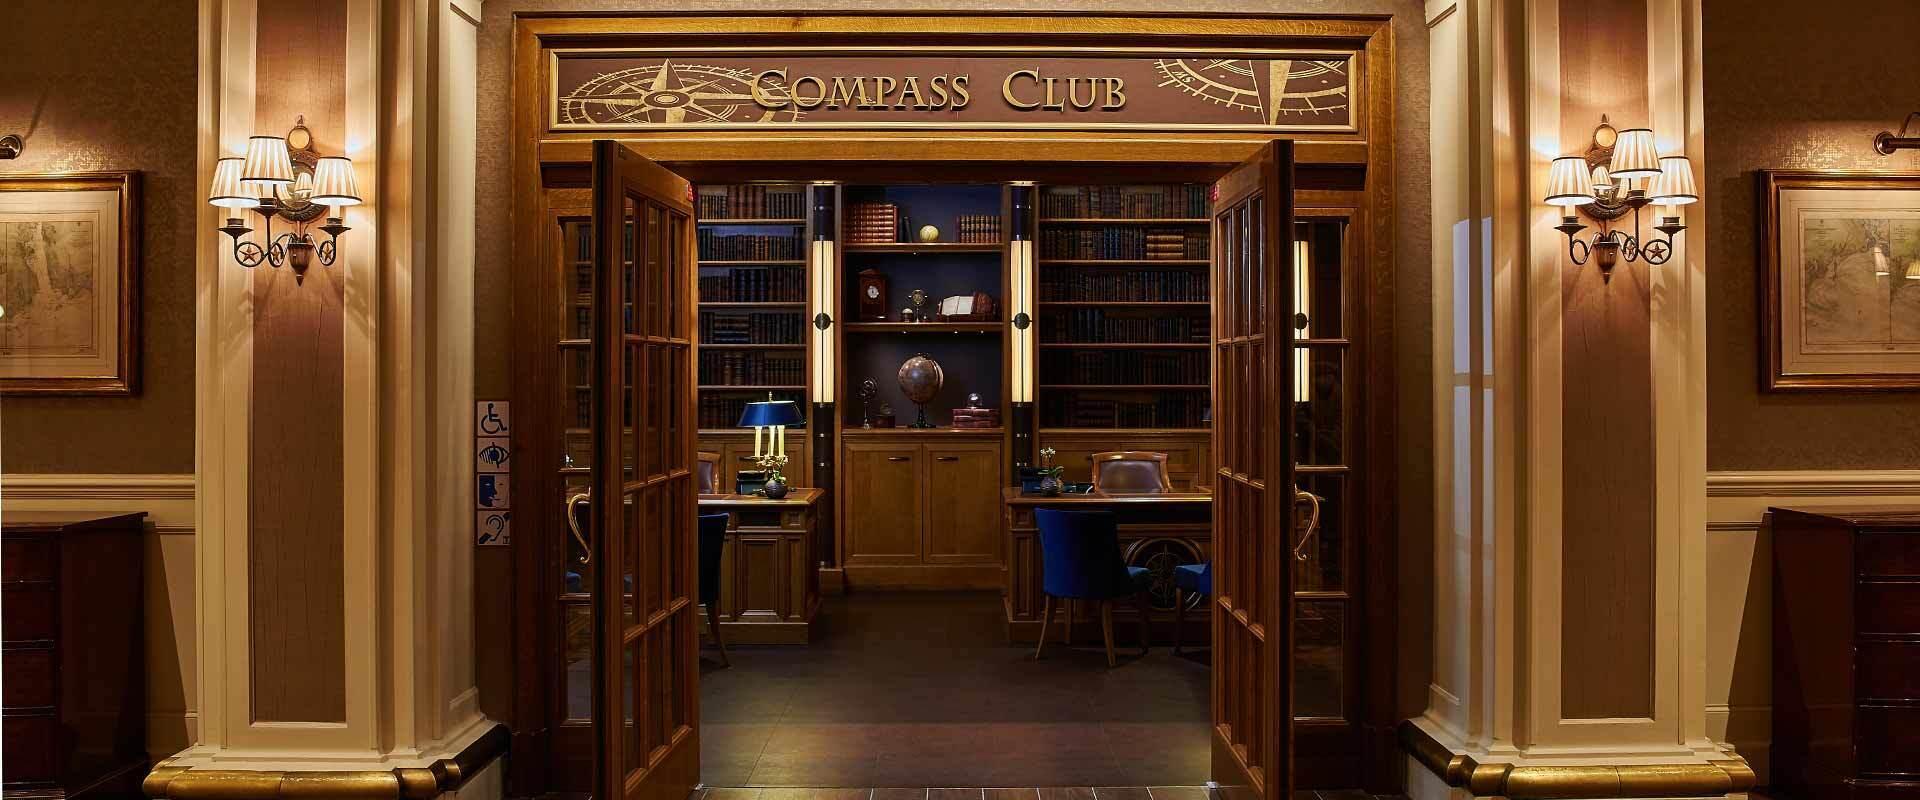 Club-værelser, suiter og en Compass Club Lounge - en kaptajn værdig